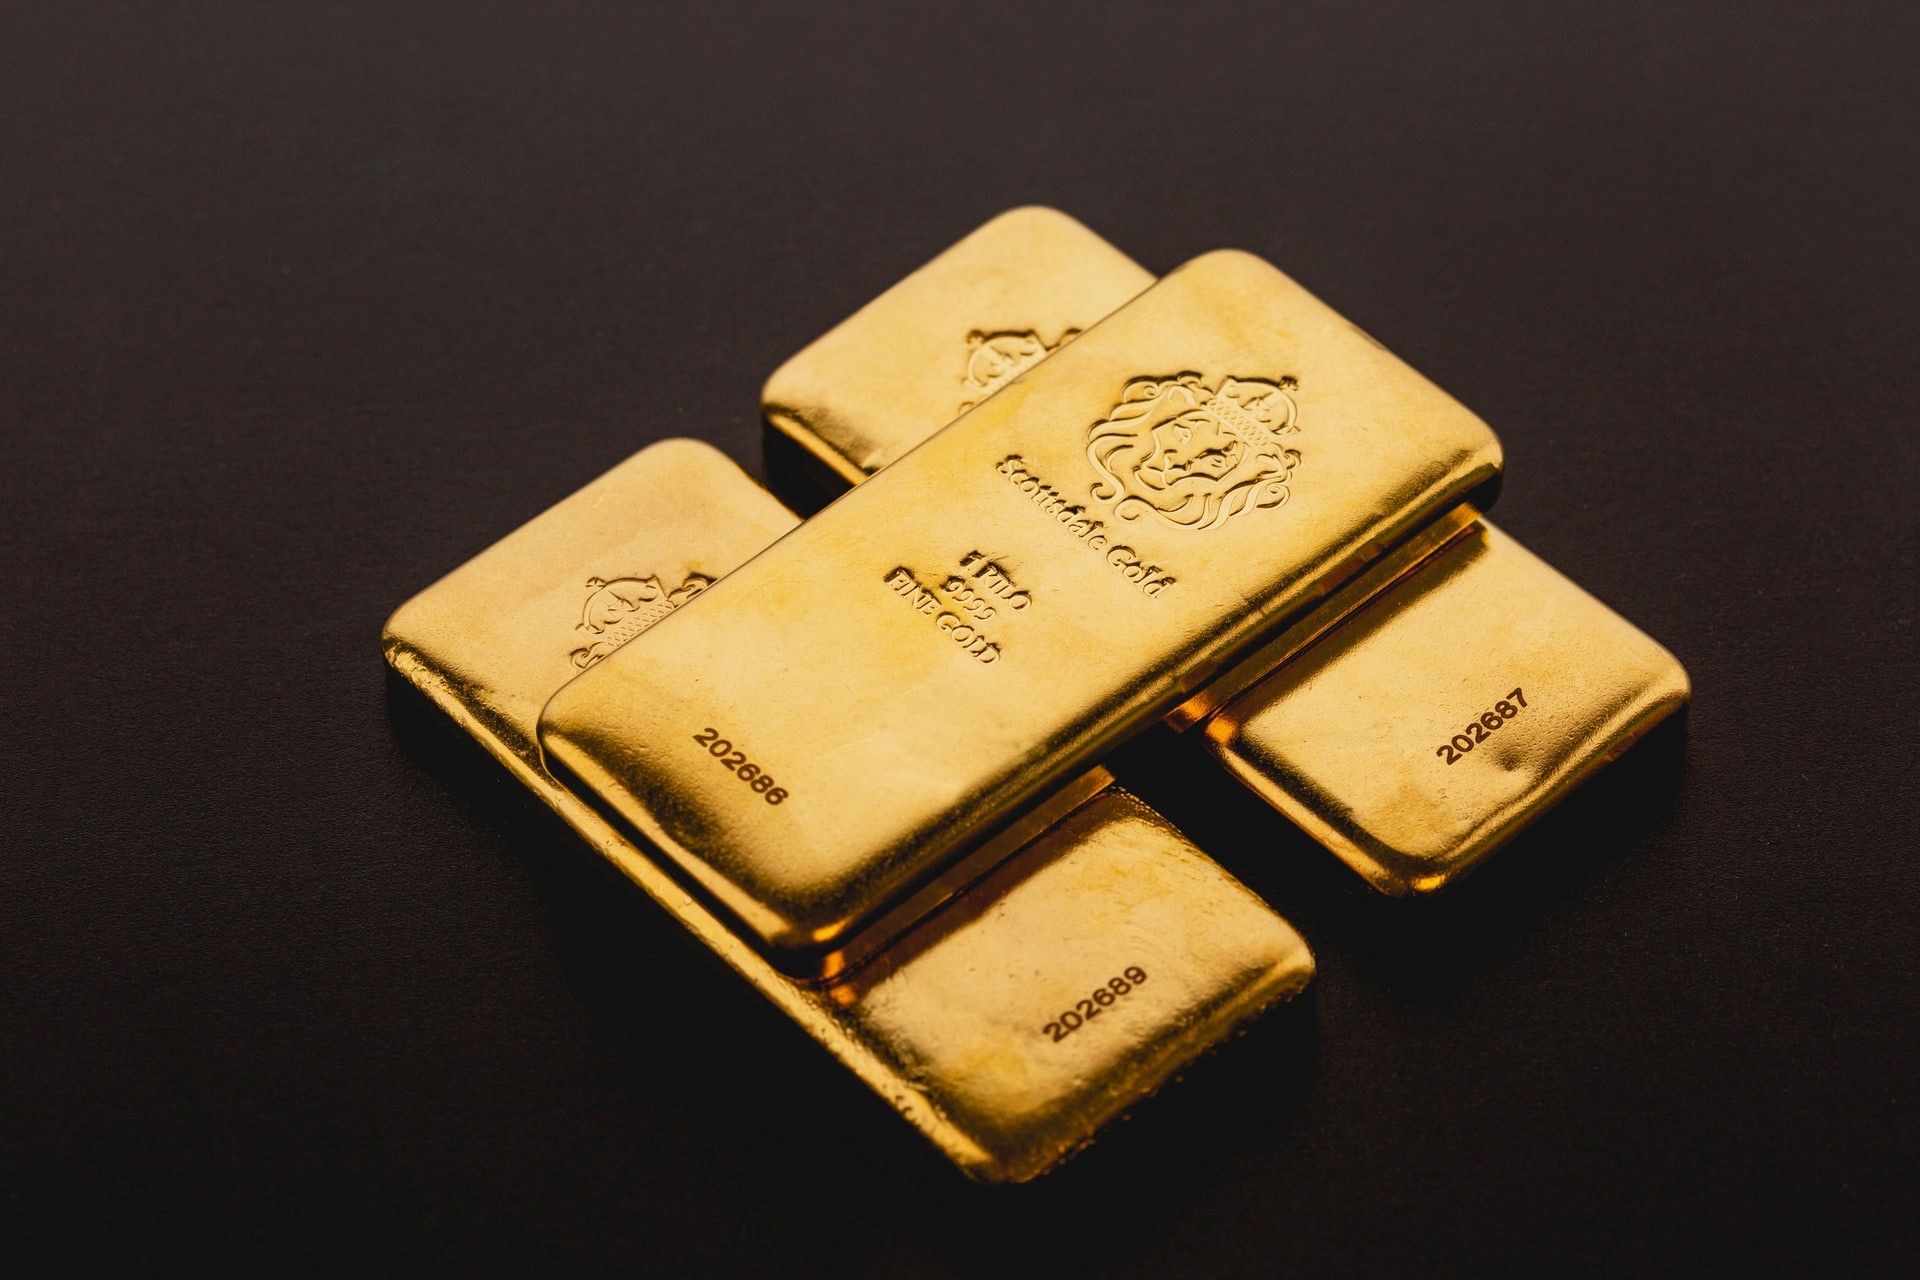 Guldmarknaden kan ha sett några turbulenta månader då priserna har fallit kraftigt från 2 000 dollar per troy ounce. Investeringsefterfrågan på guld har dock förblivit stark eftersom Royal Mint ser en stark efterfrågan på sin guldstödda Exchange-Traded Commodity (ETC).